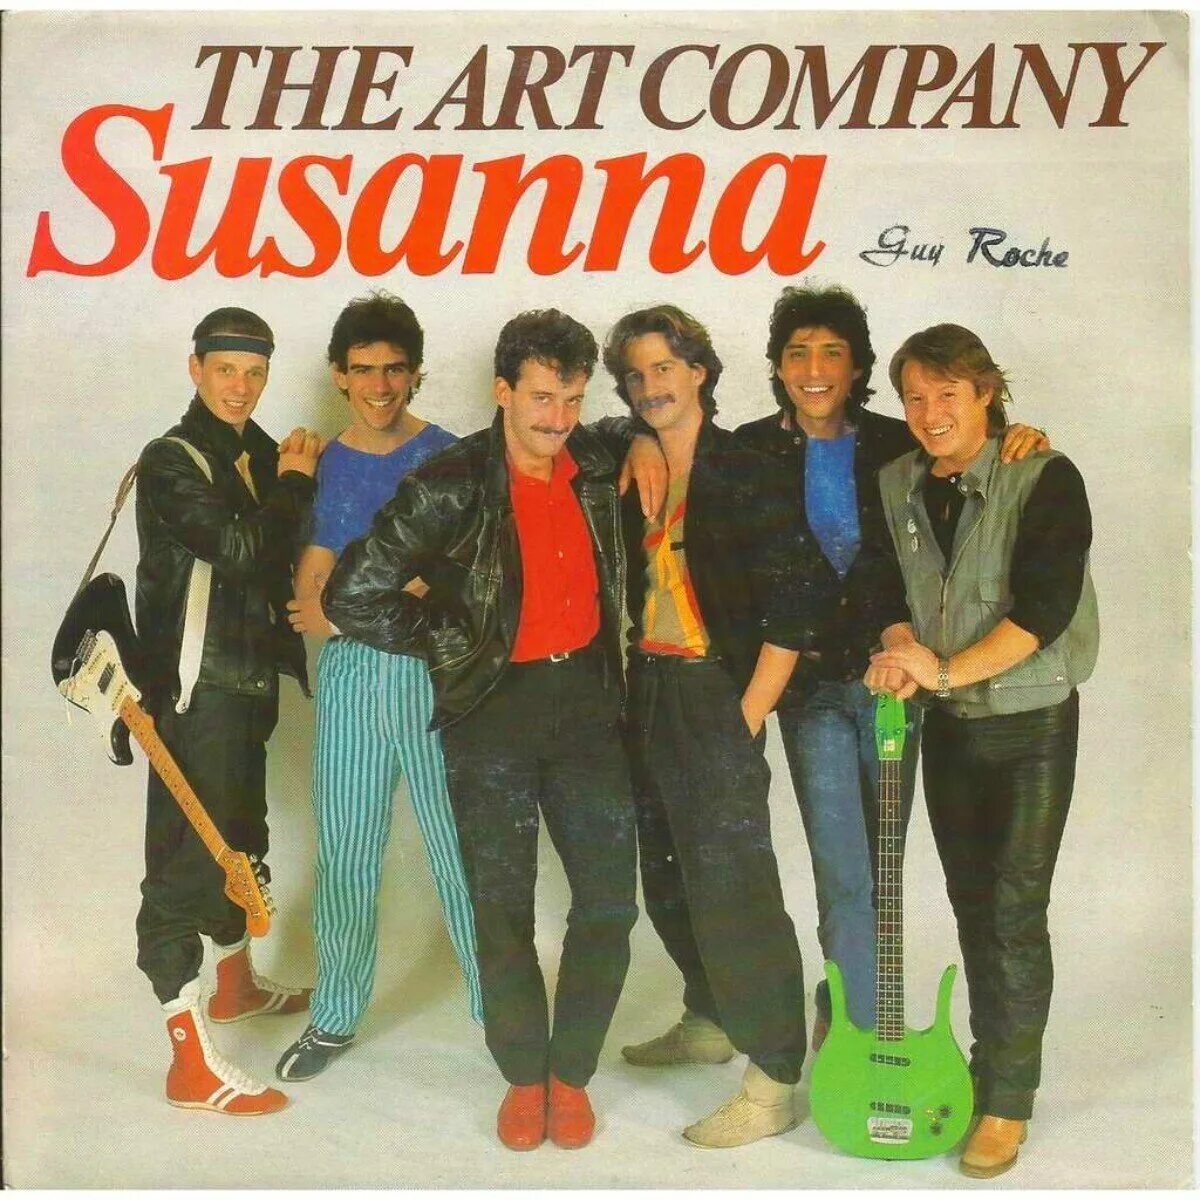 Группа VOF de Kunst. Art Company Susanna. Арт Компани группа. The Art Company фото. Artist company